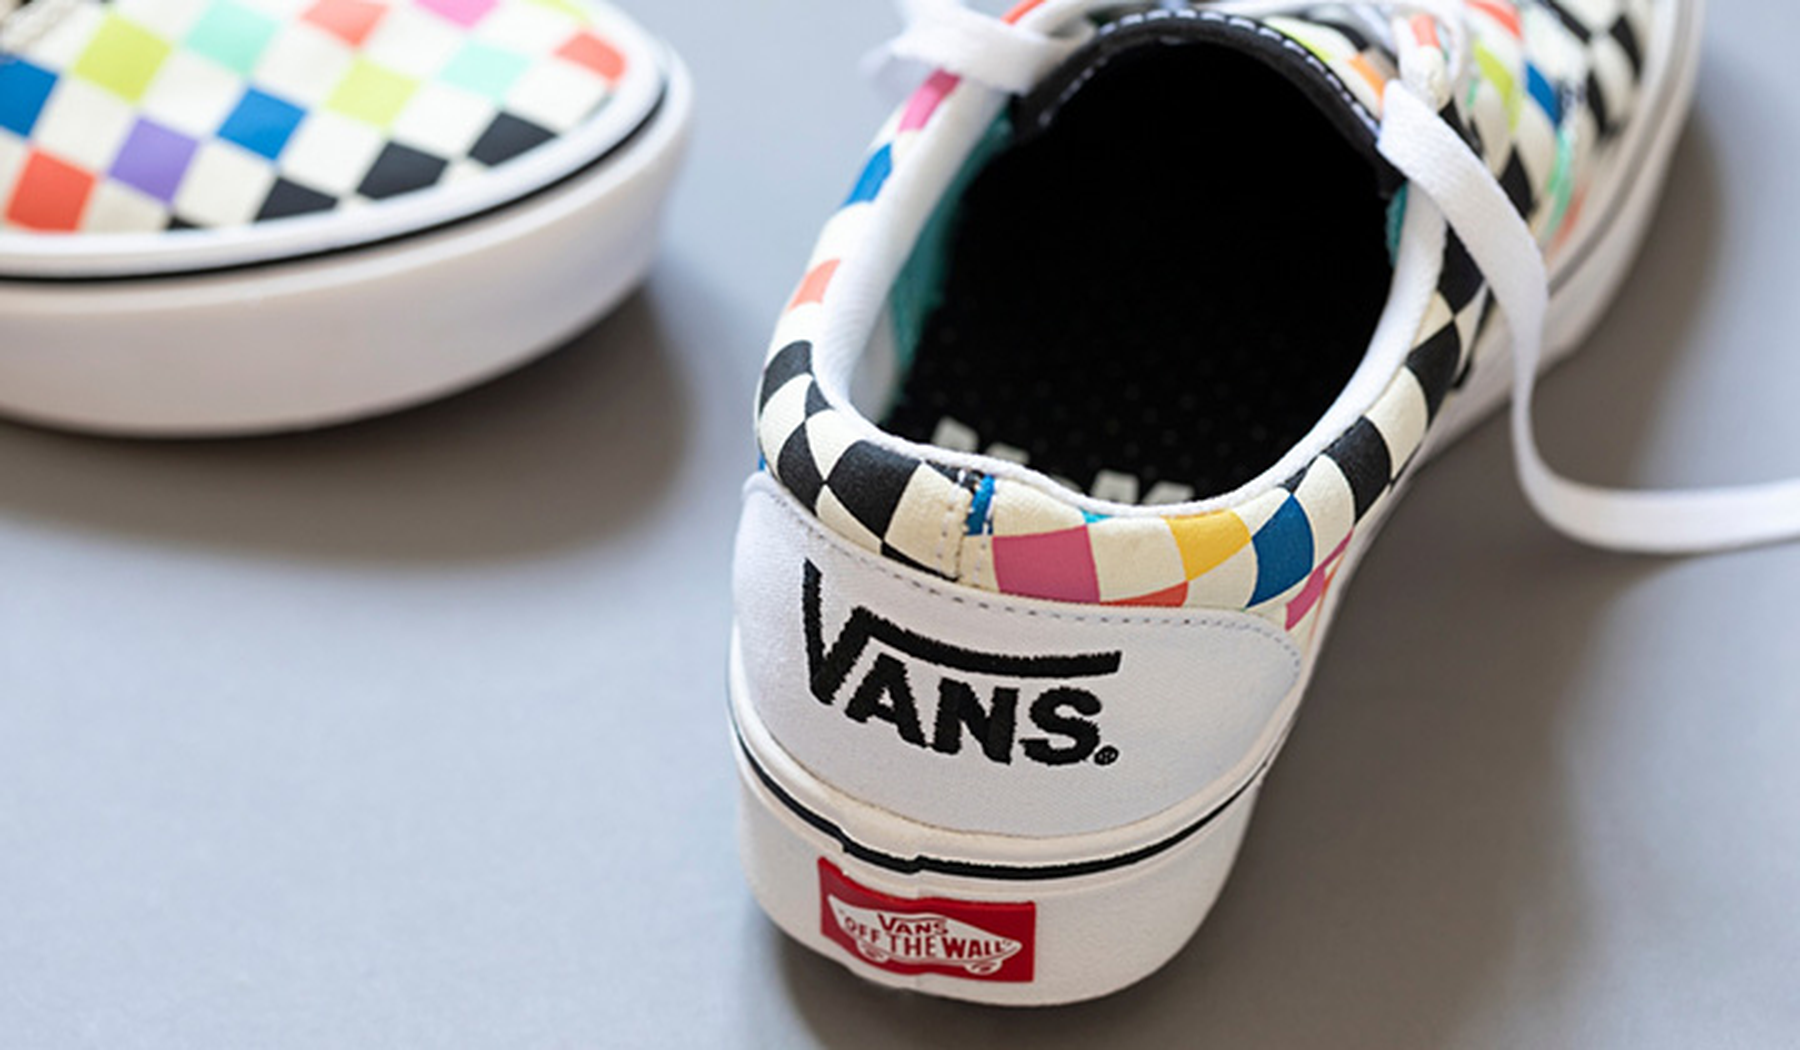 Vans sneakers with rainbow grid